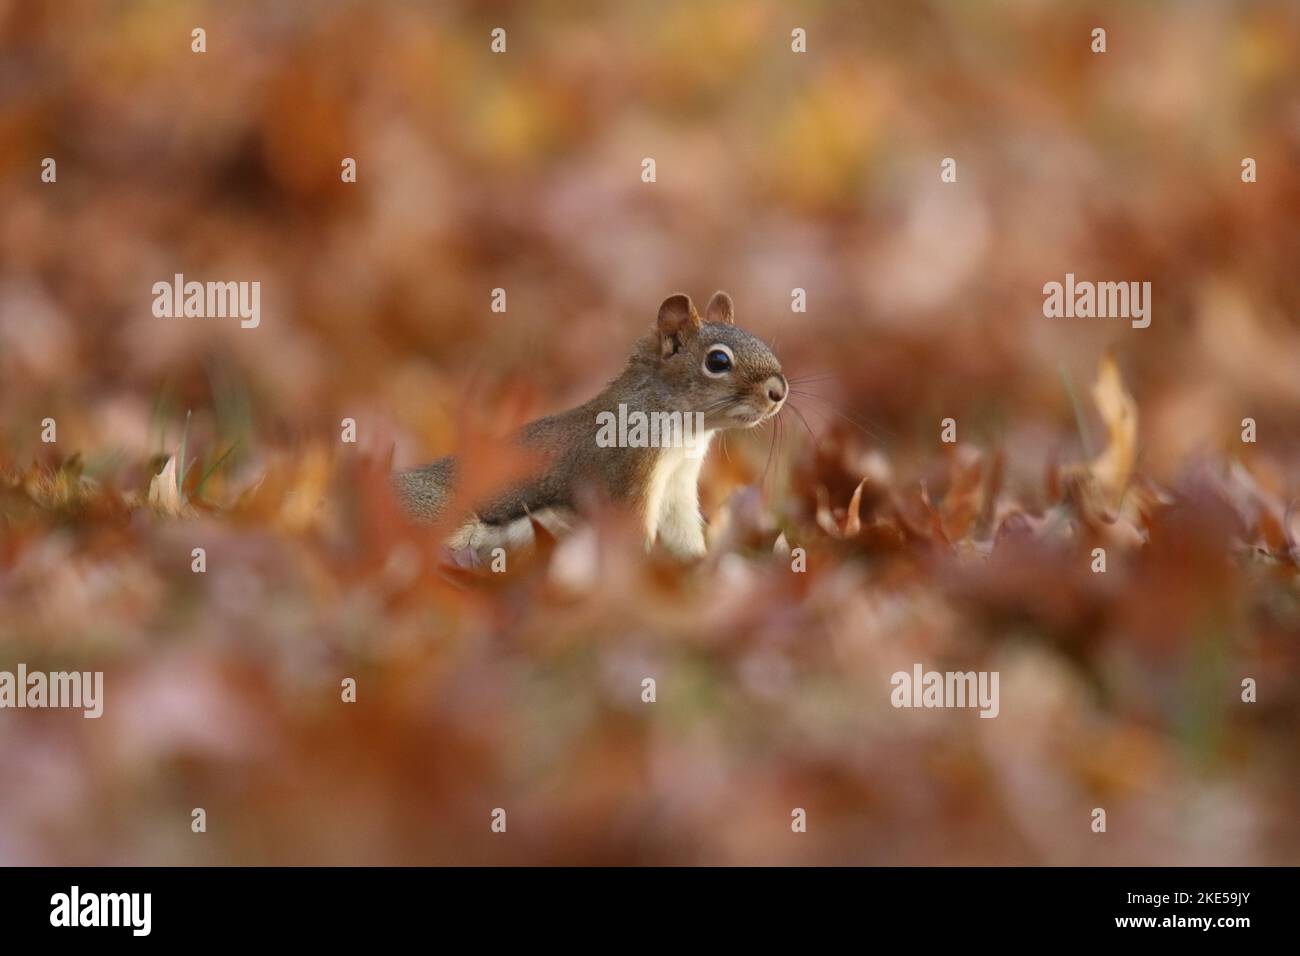 Écureuil roux américain Tamiasciurus hudsonicus en quête de nourriture dans les feuilles d'automne Banque D'Images